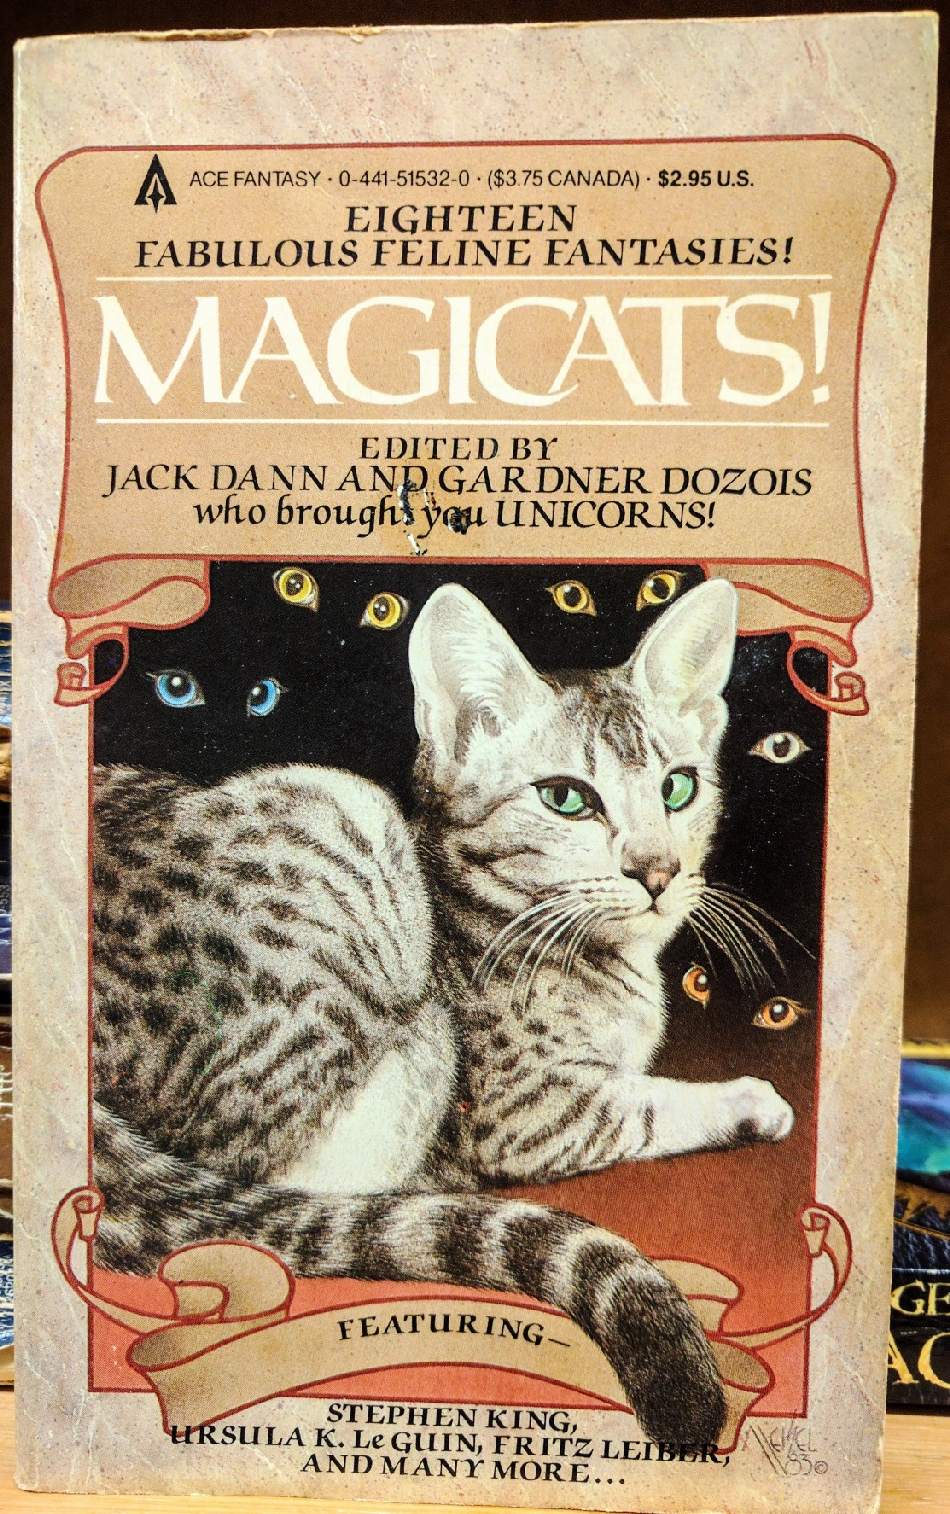 Magickcats!